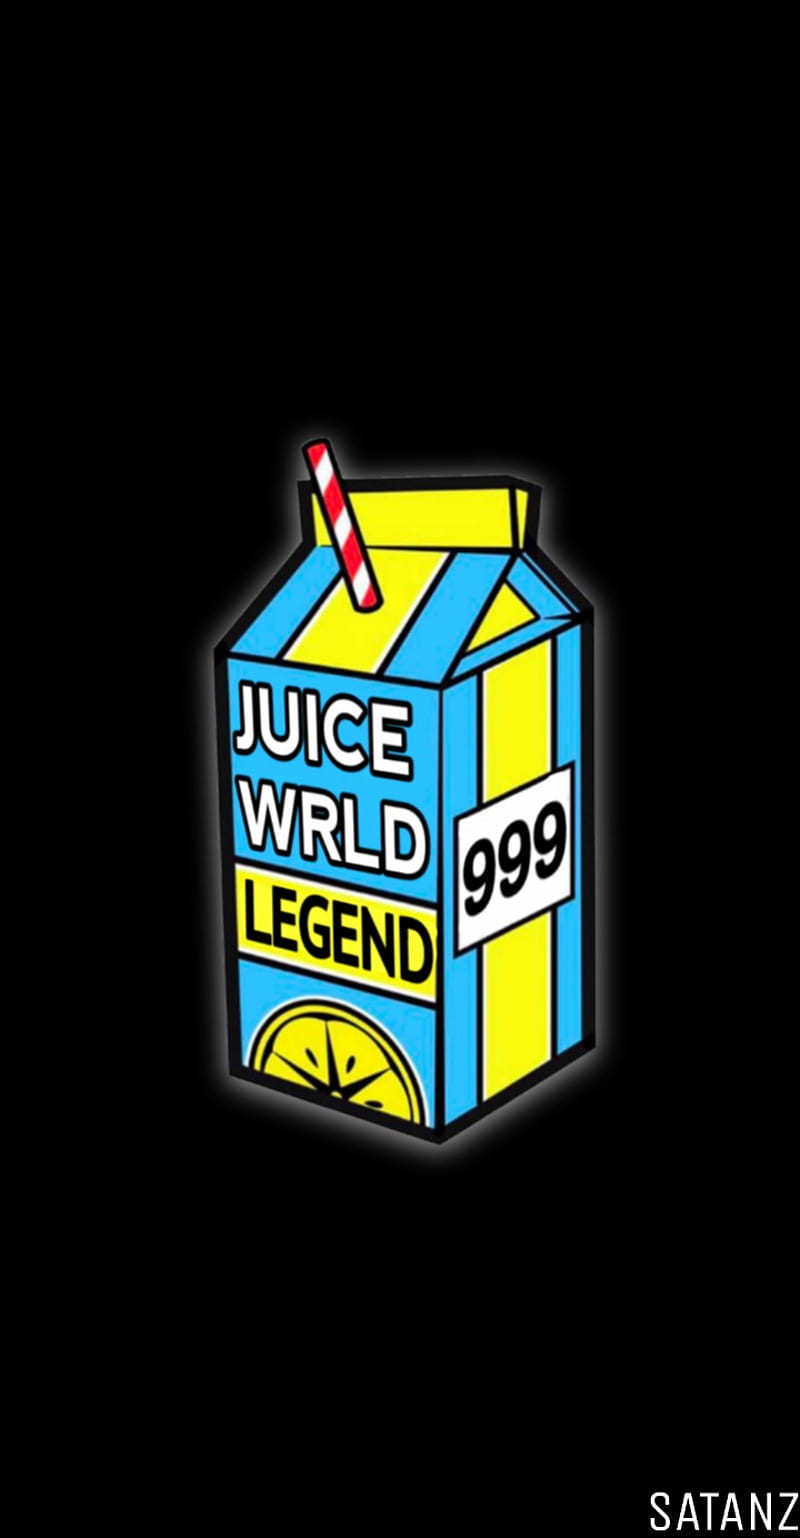 Juice wrld logo HD wallpapers | Pxfuel